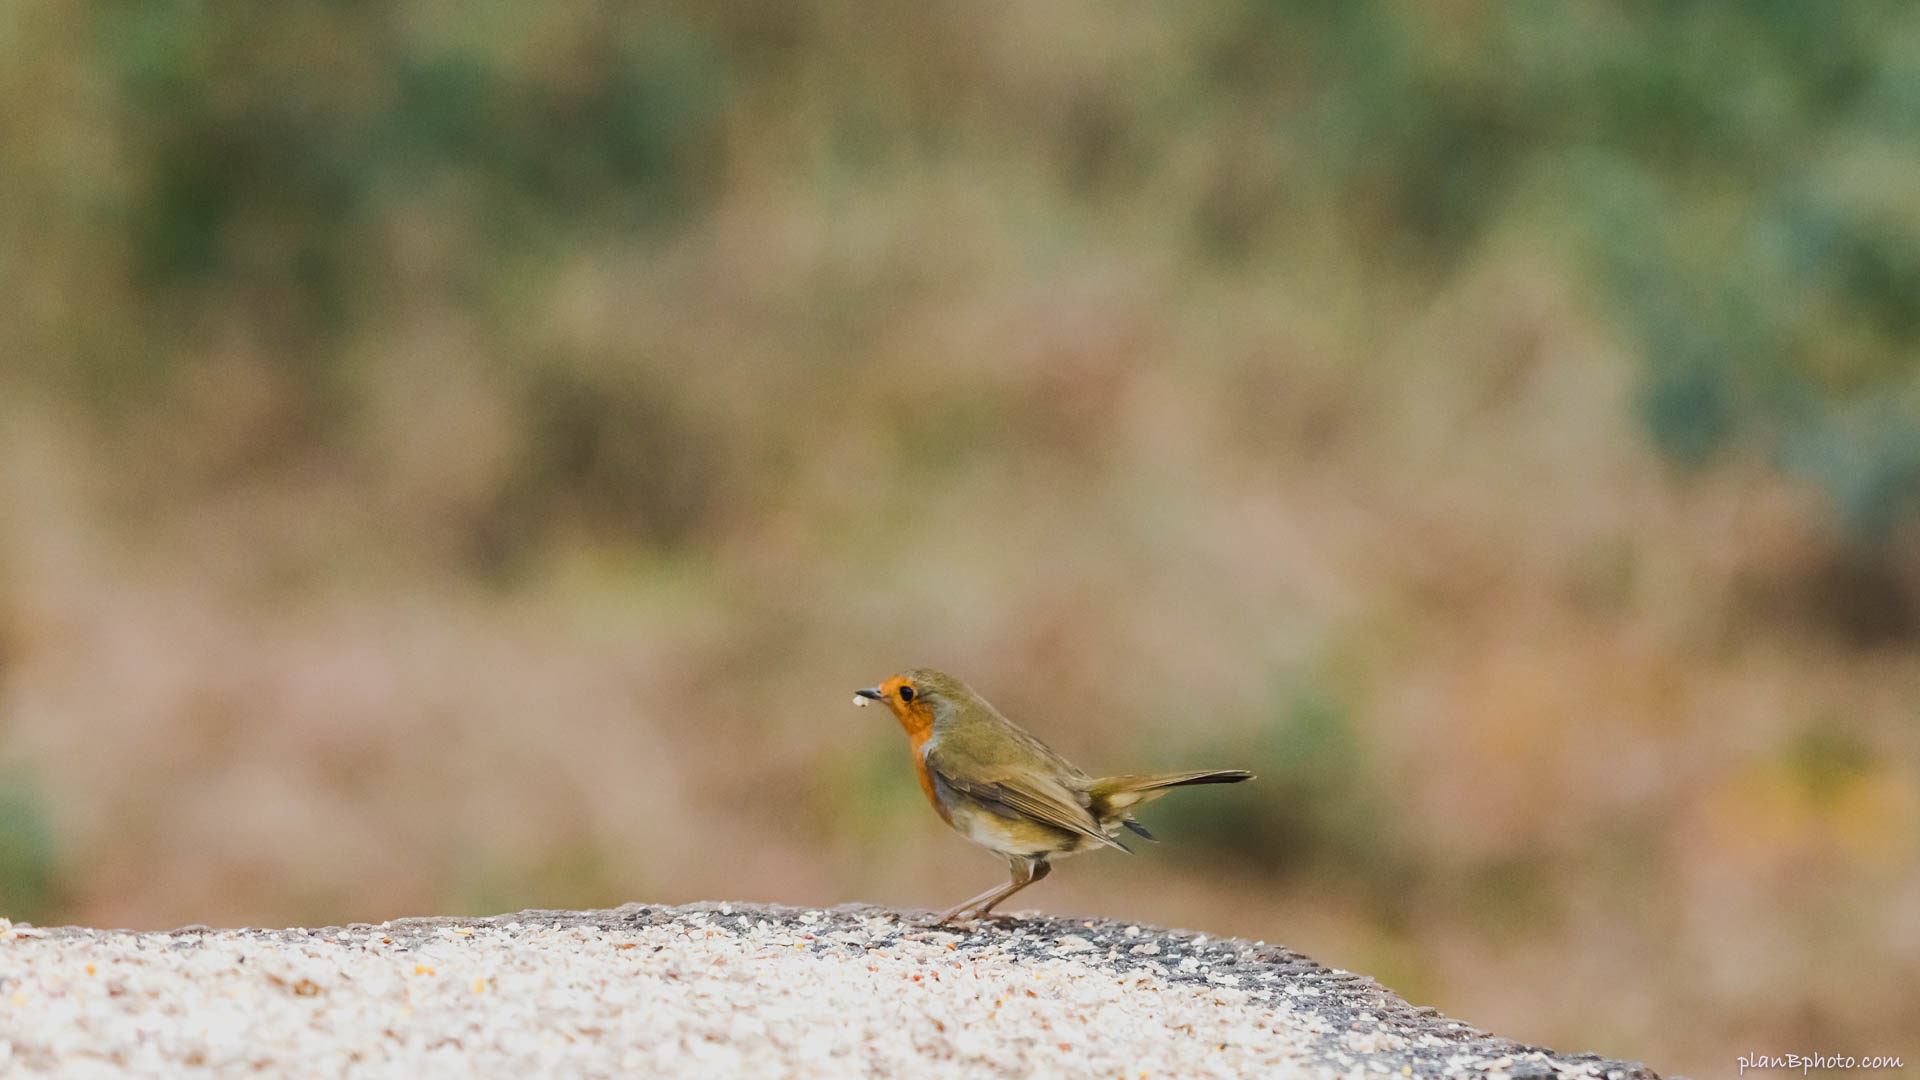 Robin bird near a bird feeder